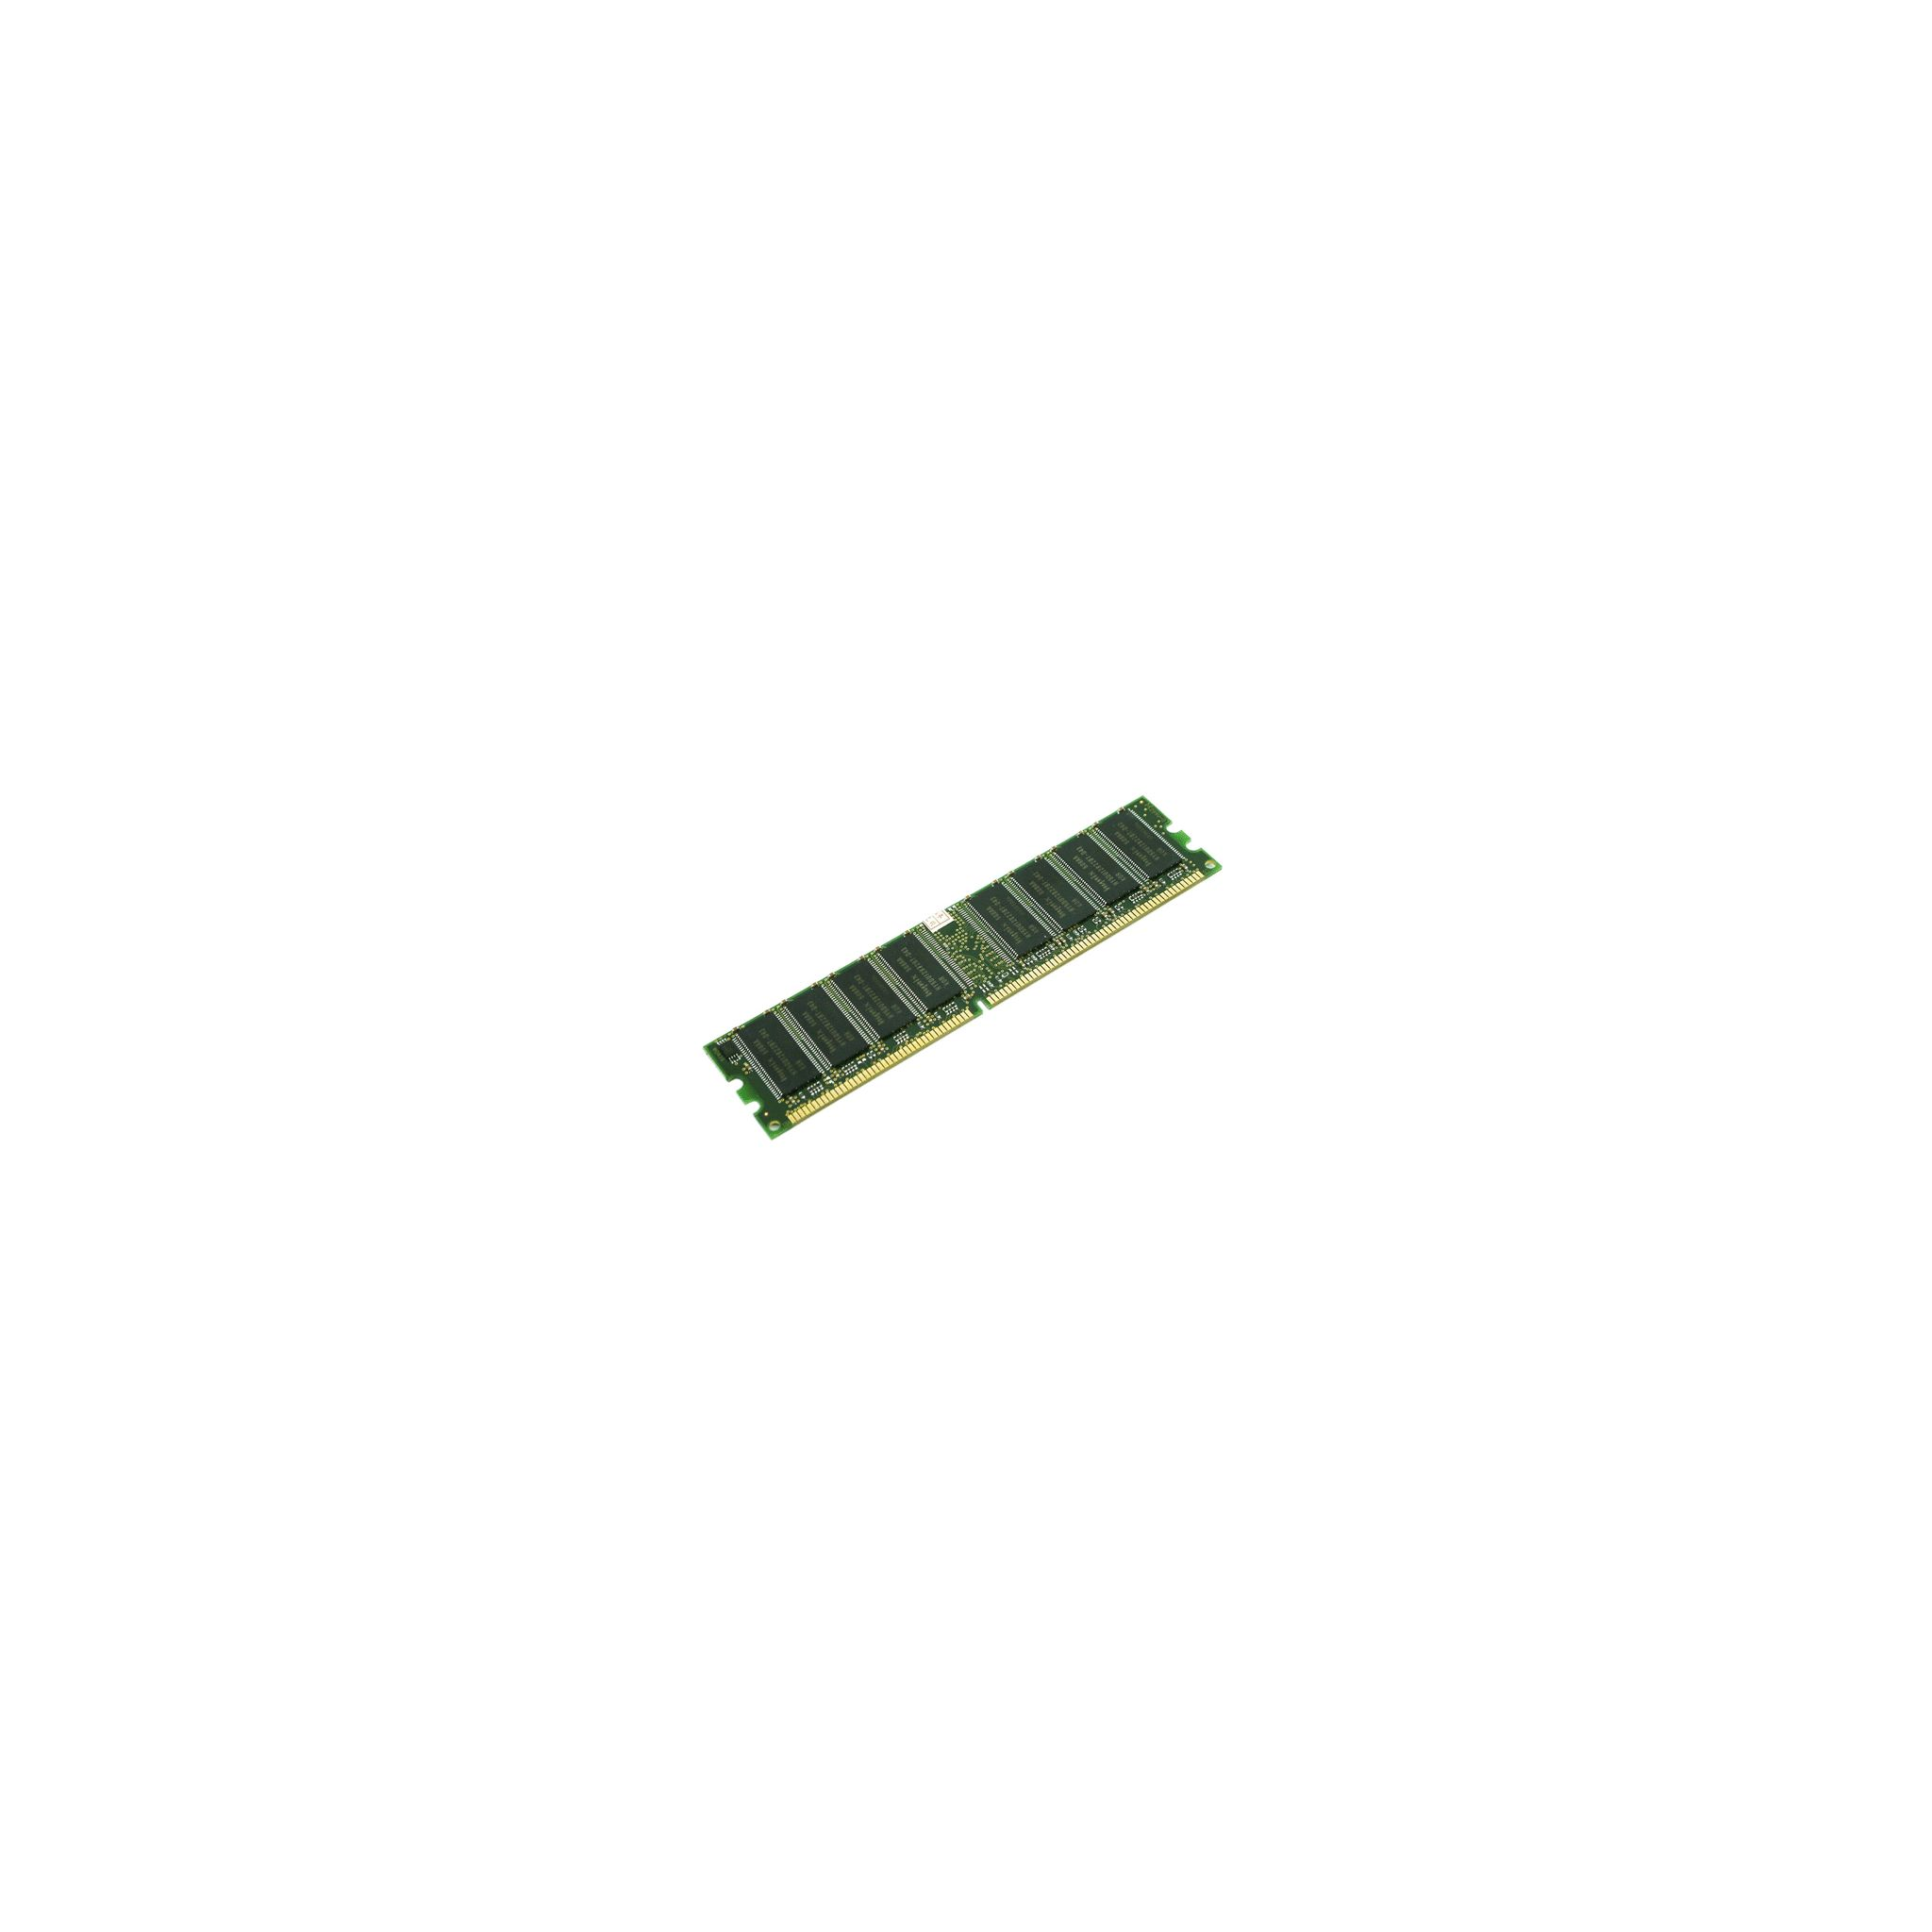 KINGSTON DDR4 Arbeitsspeicher 4 TECHNOLOGY KVR N19S6/4 26 GB